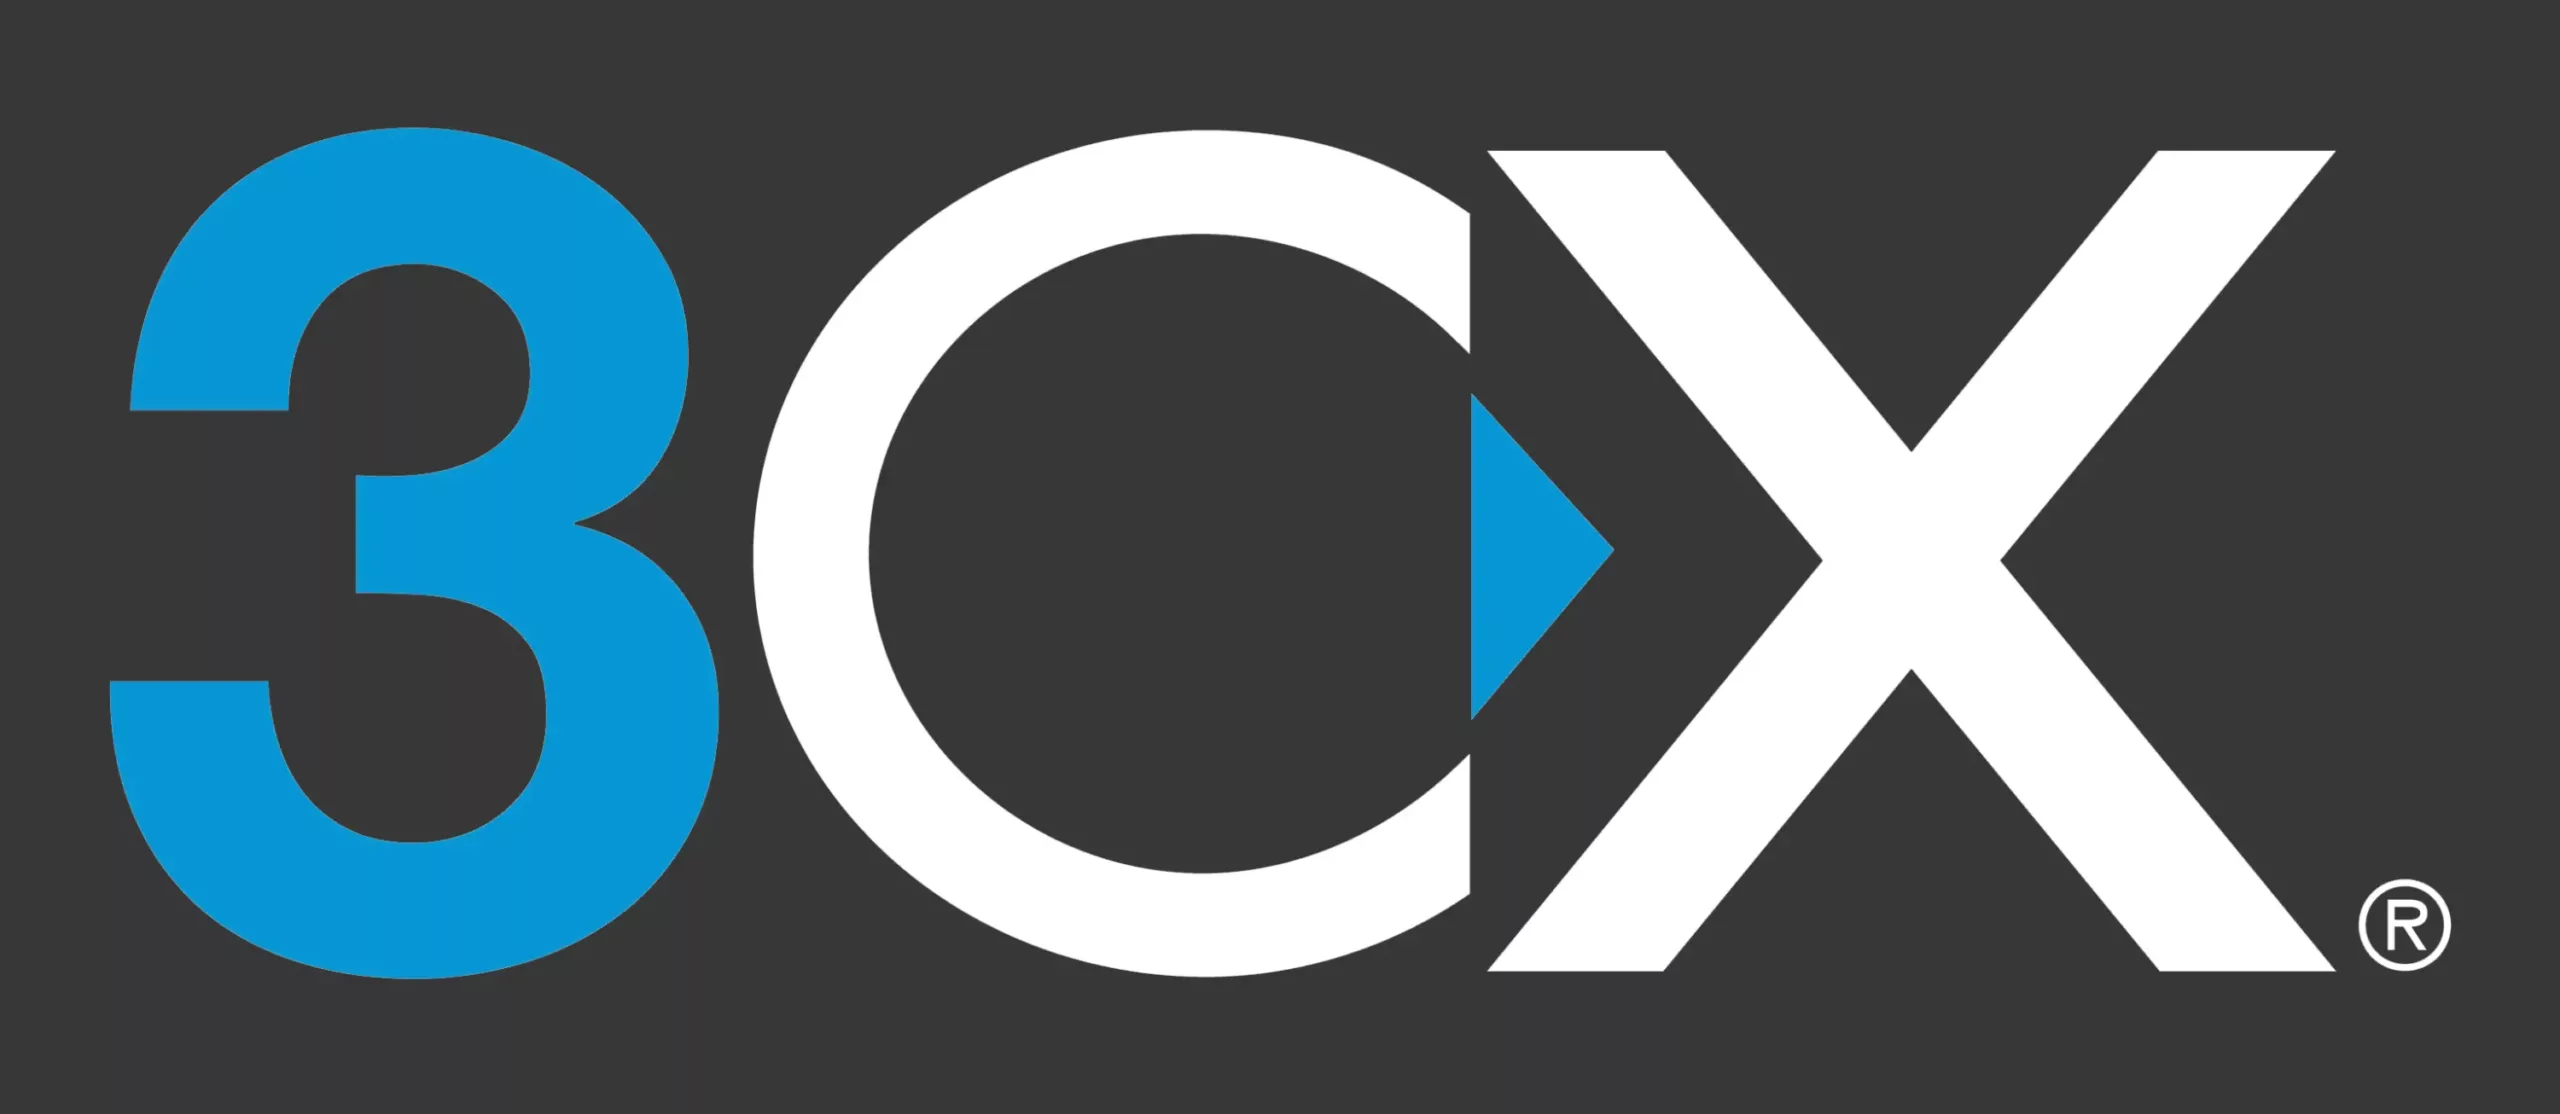 logo de 3CX, notre partenaire en téléphonie voip